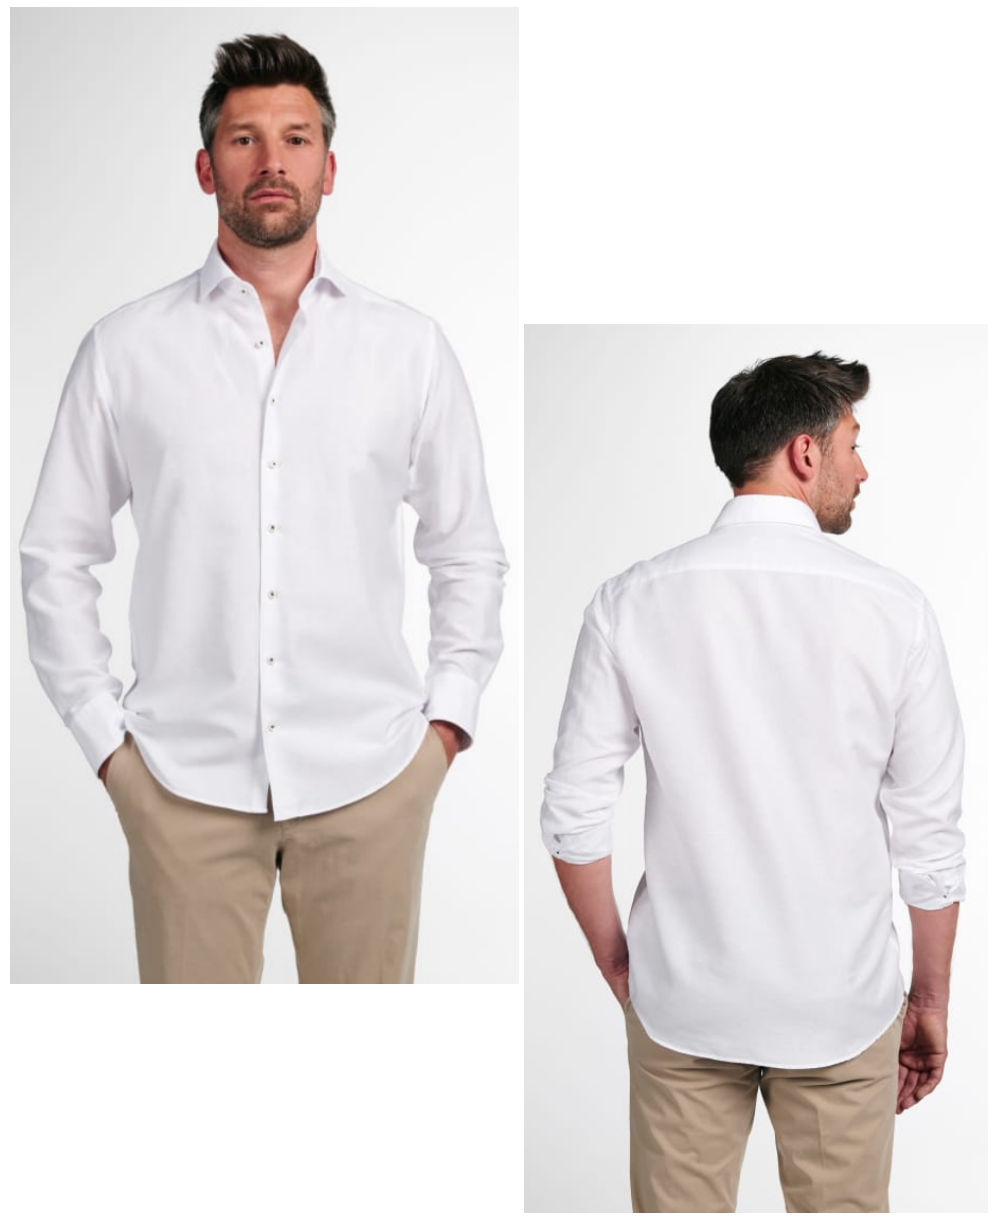 Modern Hochwertige Fit Langarmhemd Marken führender 1863 weiss Herrenmode fairen Premium zu eterna Leinenstruktur in -